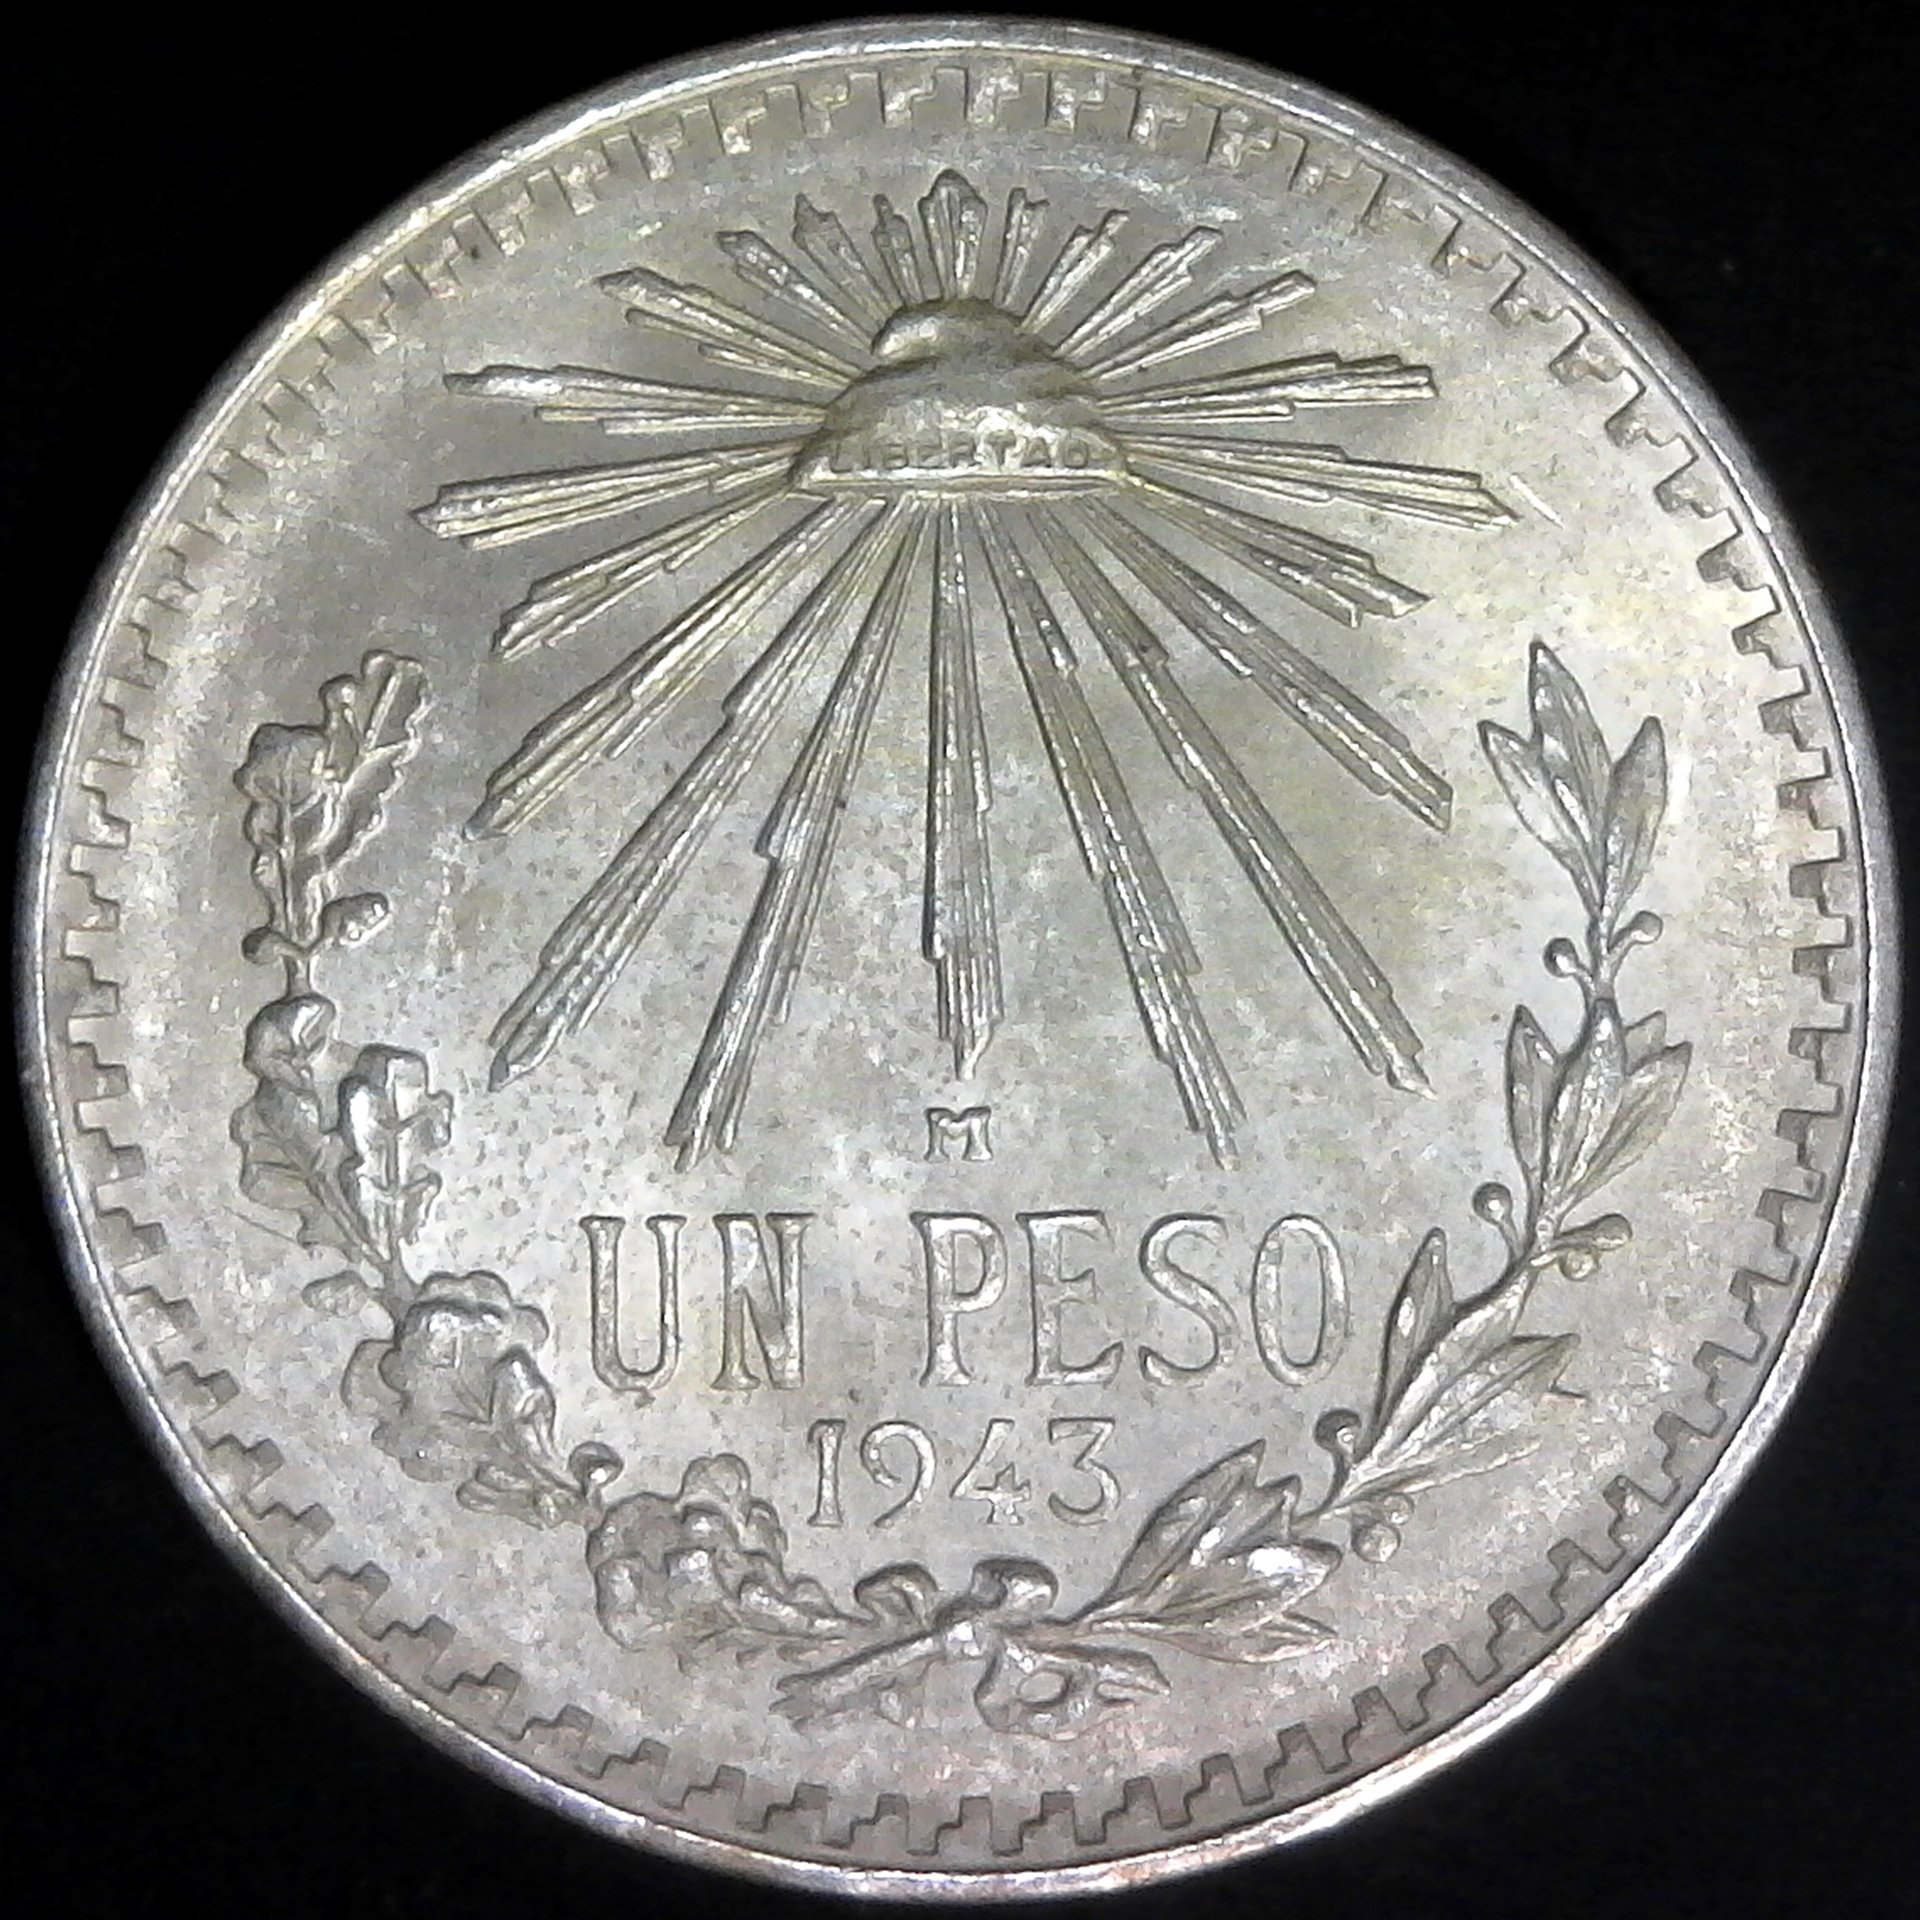 Mexico One Peso 1943 rev.jpg